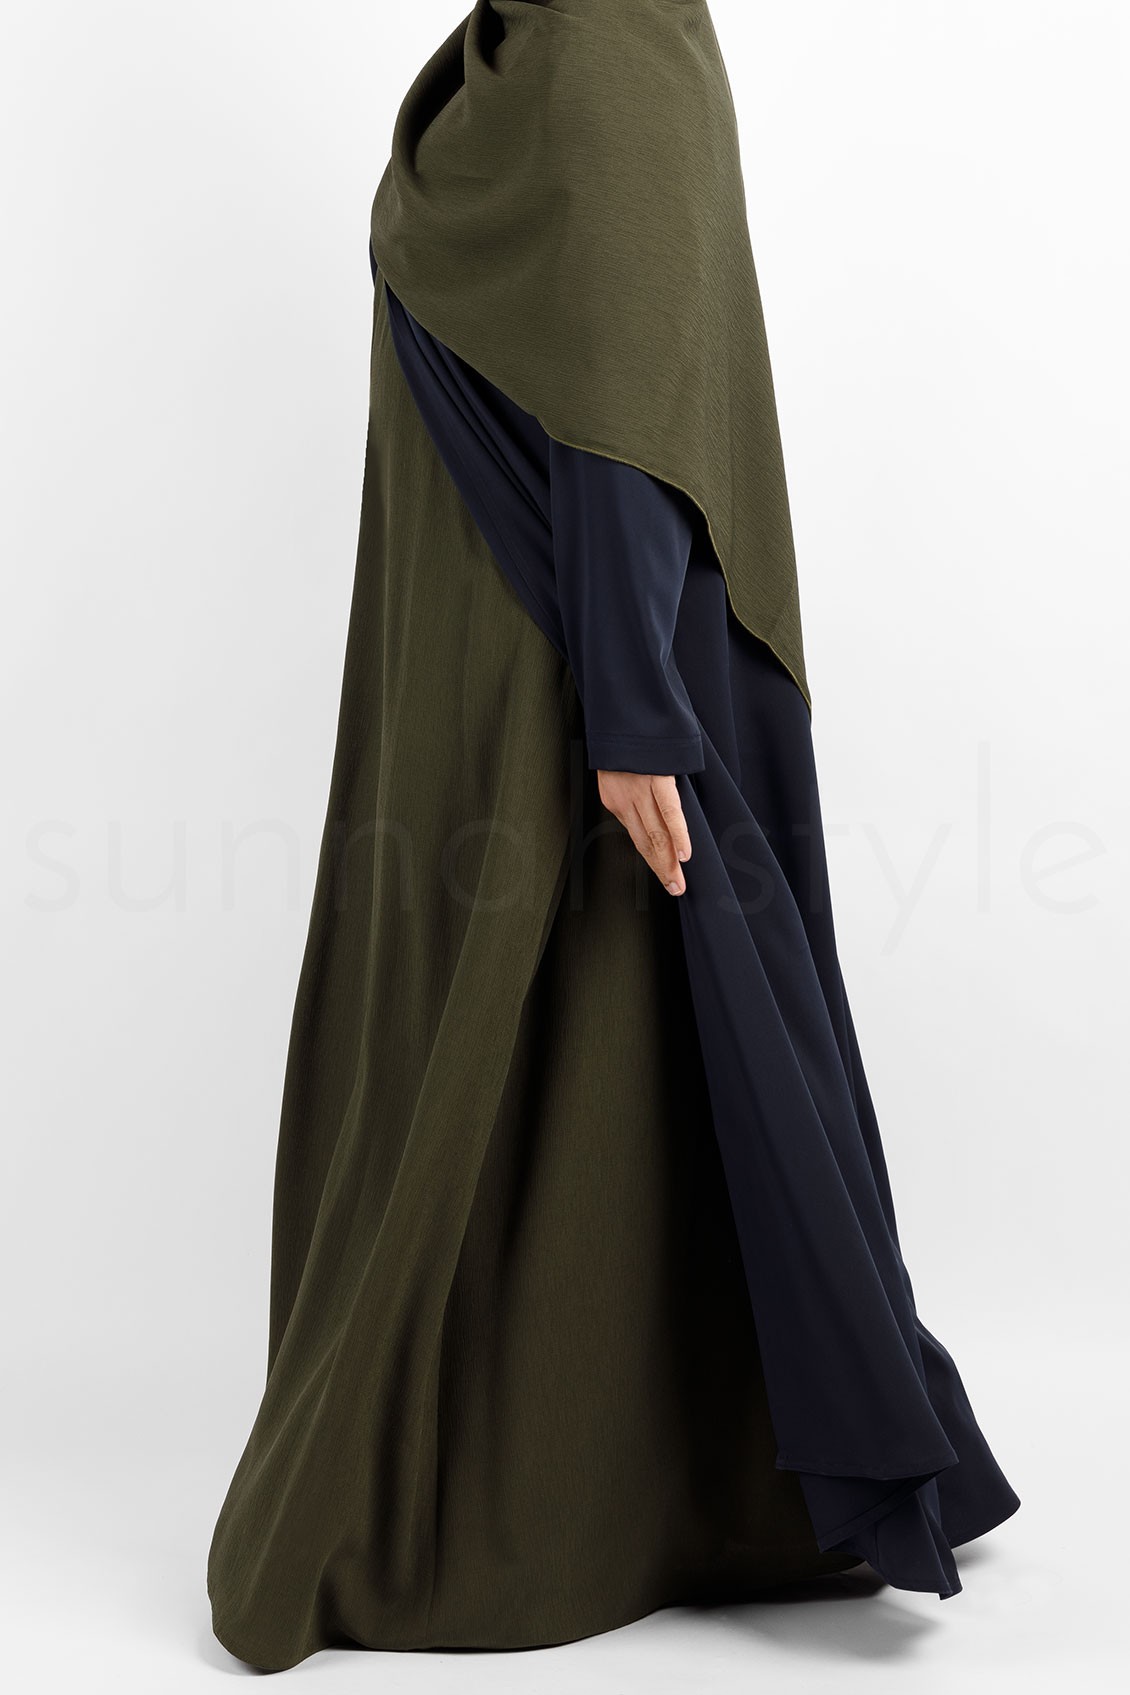 Sunnah Style Brushed Sleeveless Abaya Army